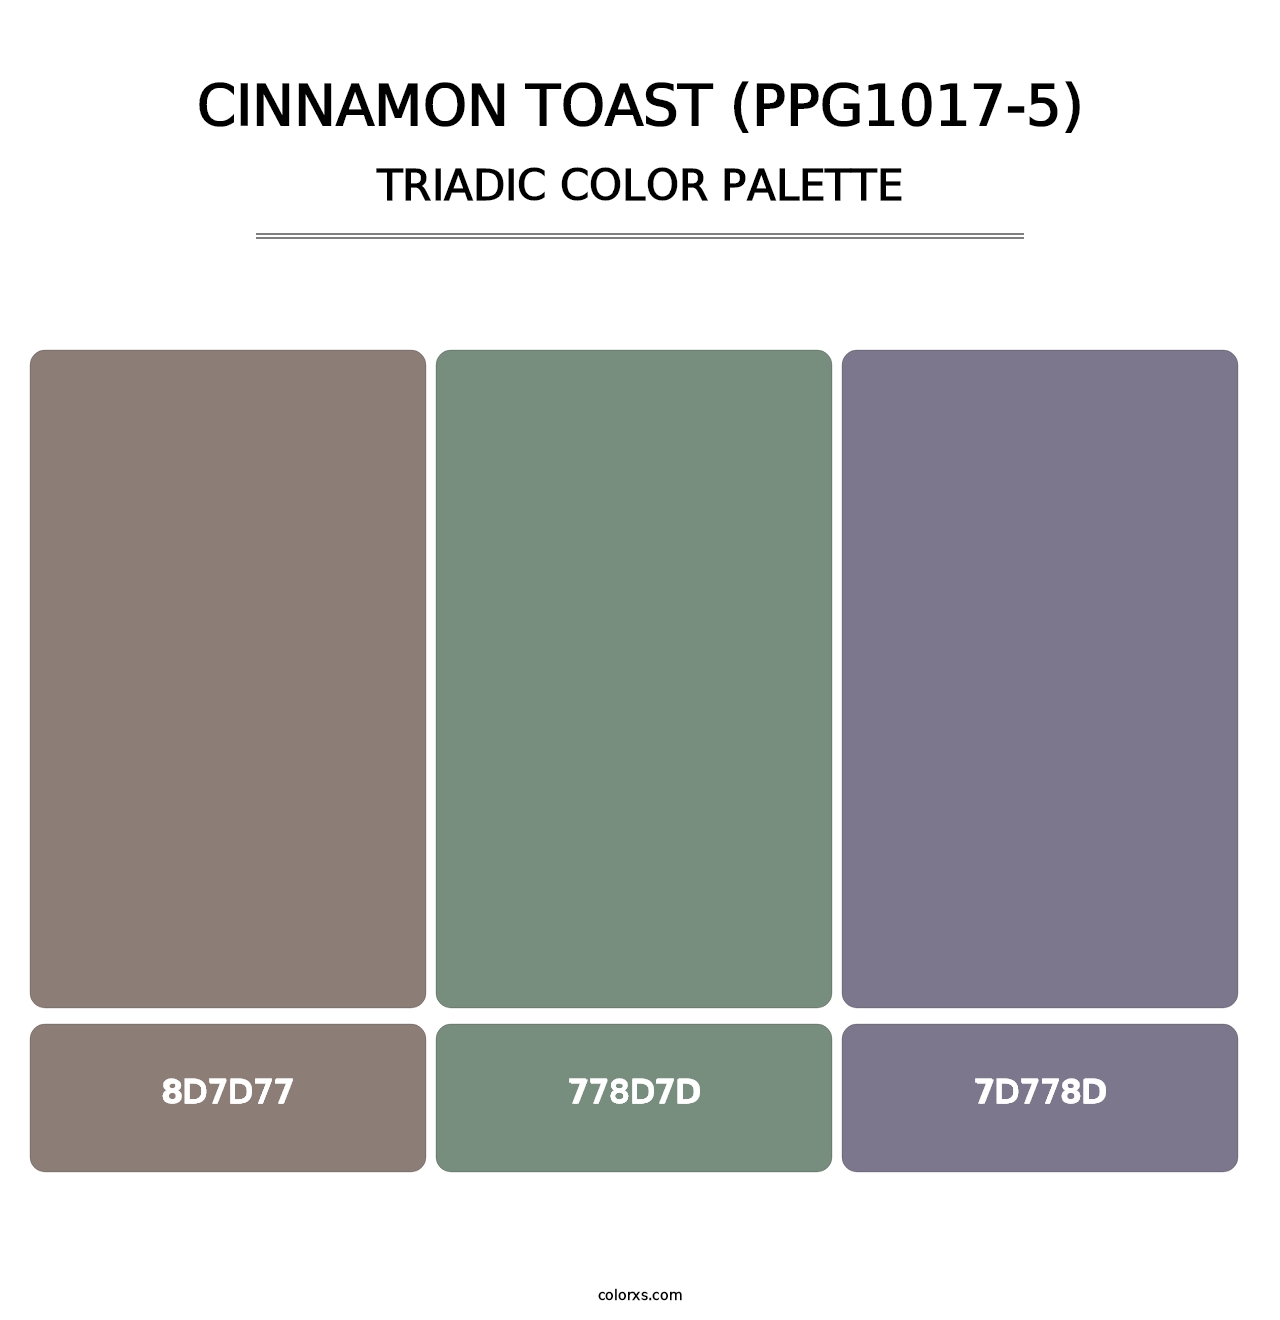 Cinnamon Toast (PPG1017-5) - Triadic Color Palette